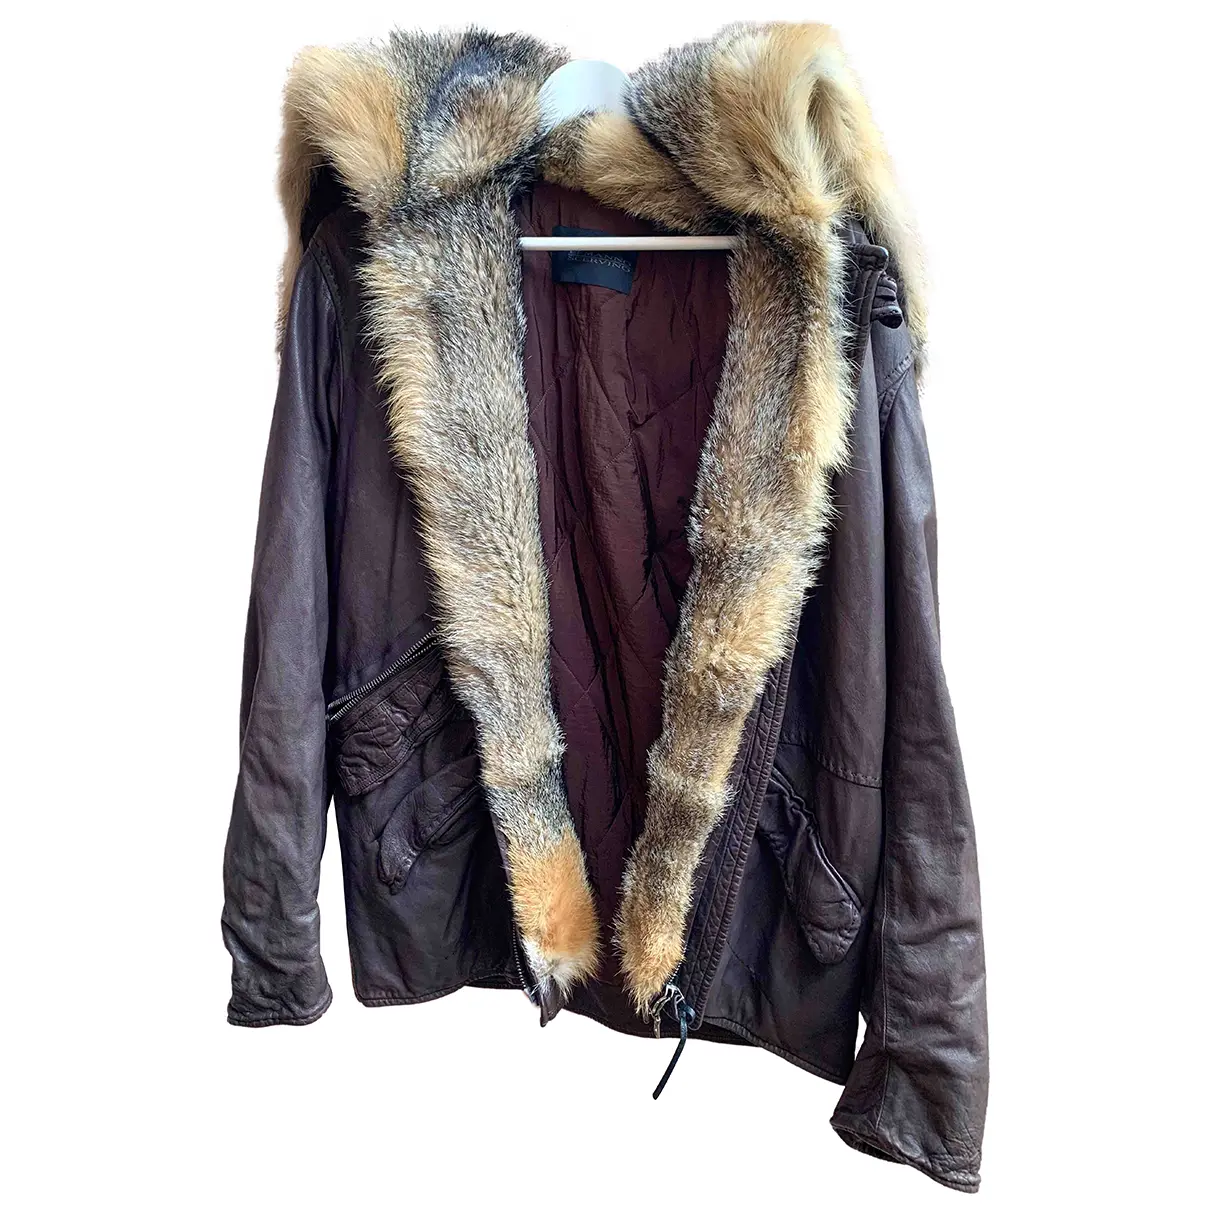 Leather jacket Ermanno Scervino